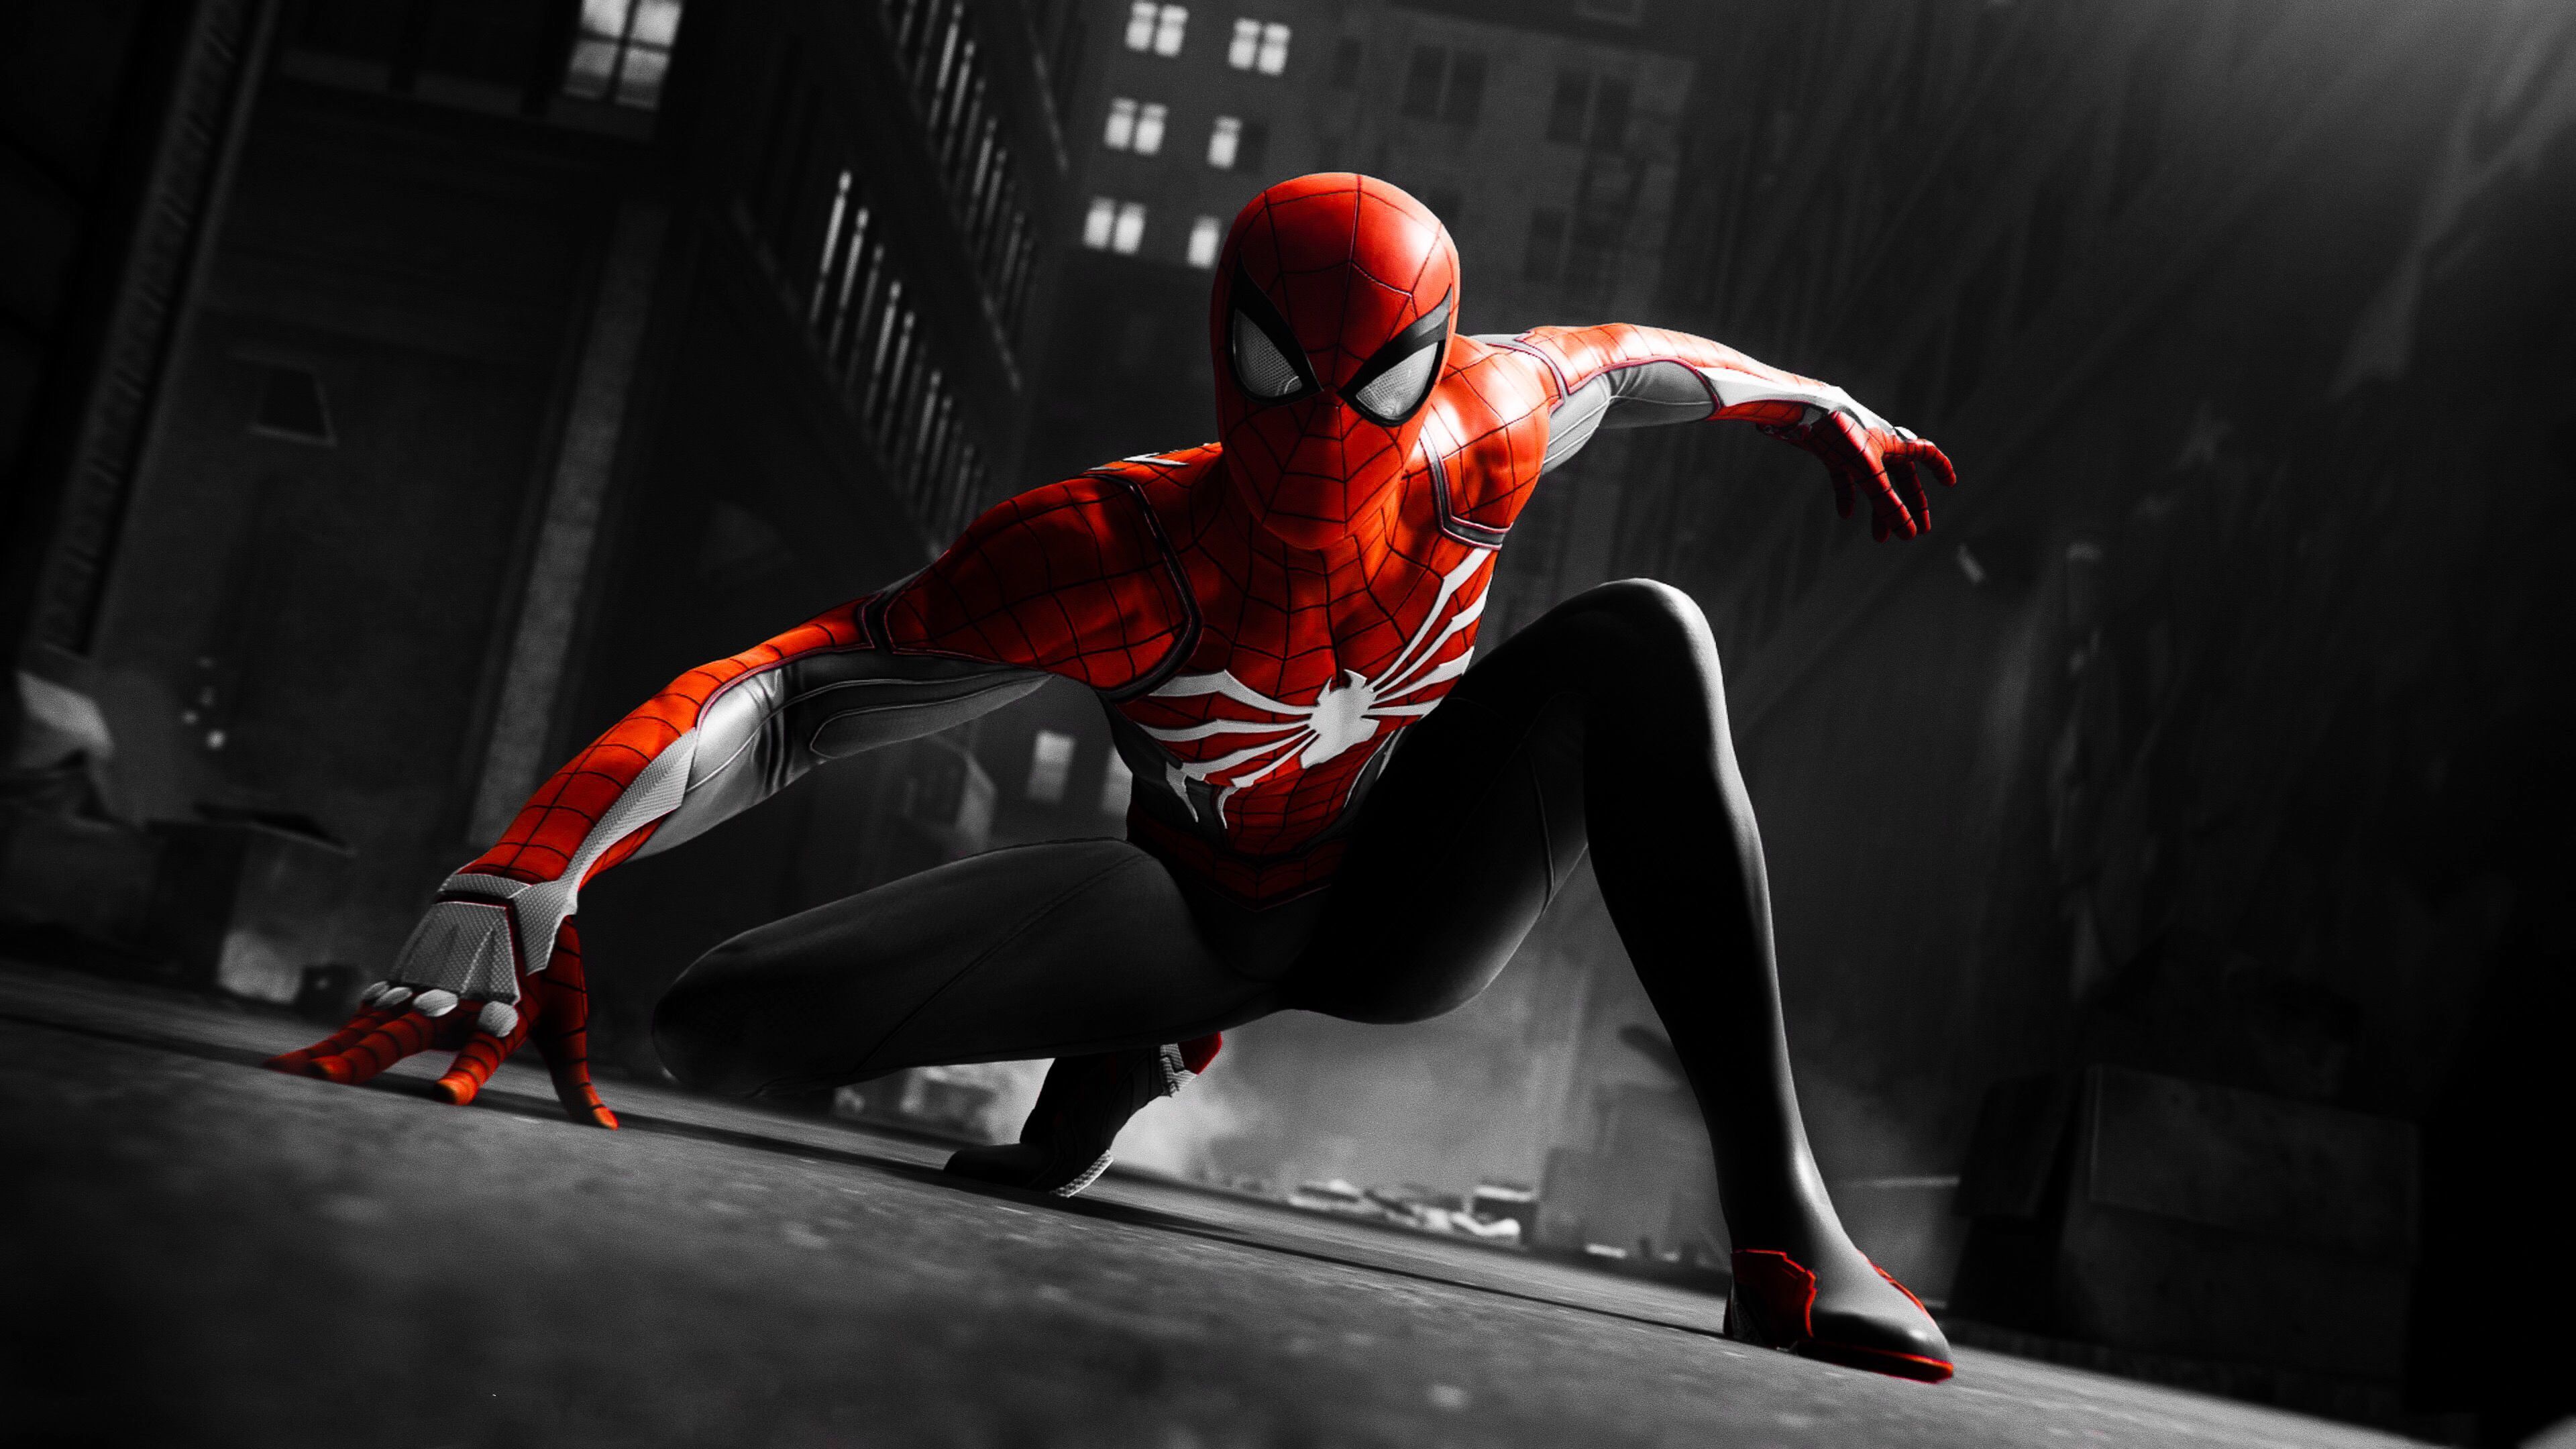 Hình nền Spider-Man Black and Red sẽ khiến cho bạn trầm trồ bởi vẻ đẹp của nhân vật yêu thích. Bộ sưu tập này sẽ khiến cho bạn không thể rời mắt khỏi màn hình và cảm nhận được sức mạnh của siêu anh hùng Spider-Man. Cùng thử cảm nhận sự khác biệt của hình nền này trên thiết bị của bạn.